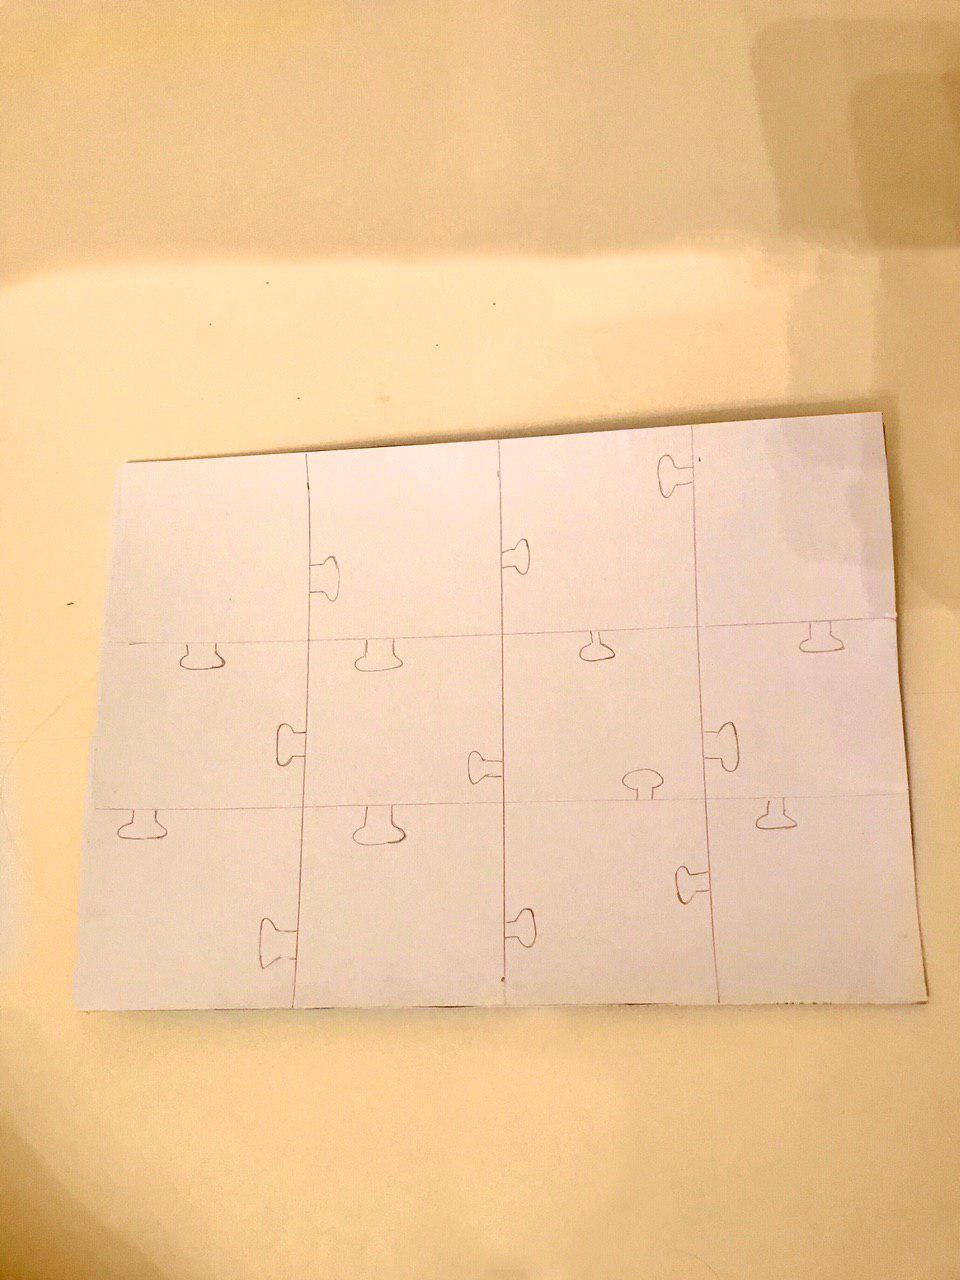 Шаг 2: Назовем новый слой “Puzzle”.